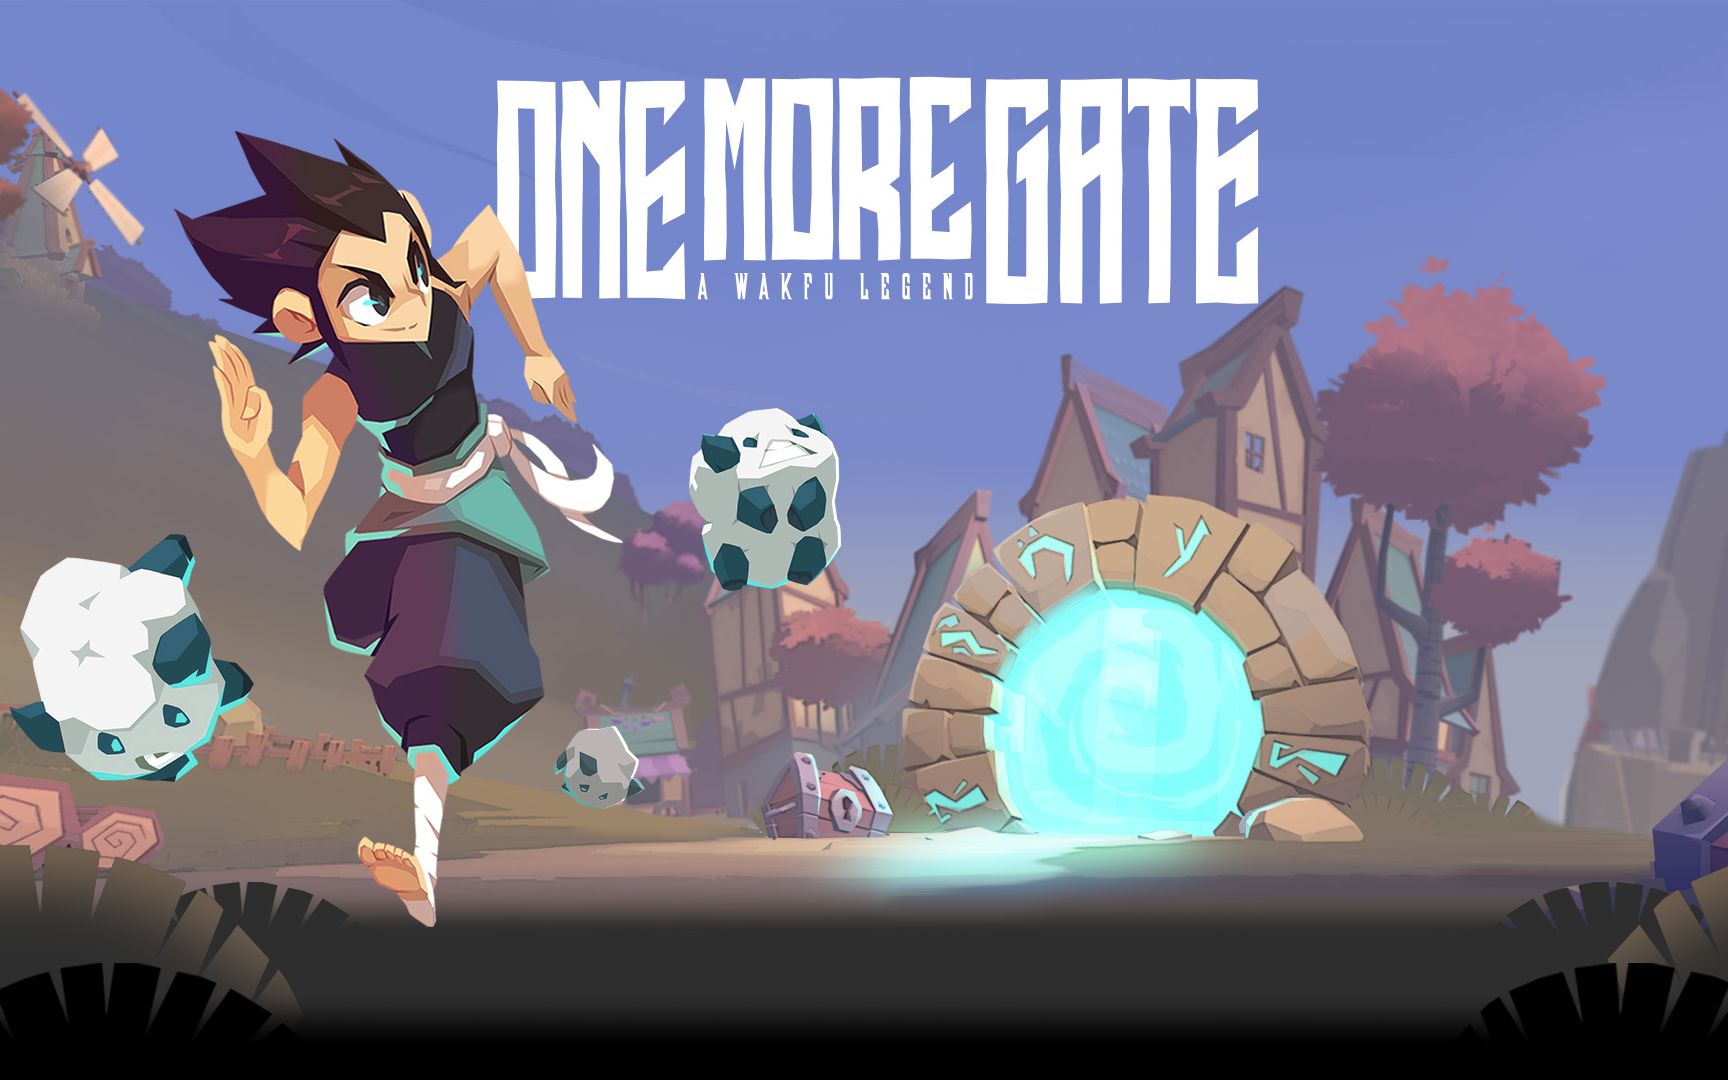 抢先体验版《One More Gate: A Wakfu Legend》将于2023年4月登陆PC (Steam)—预告片